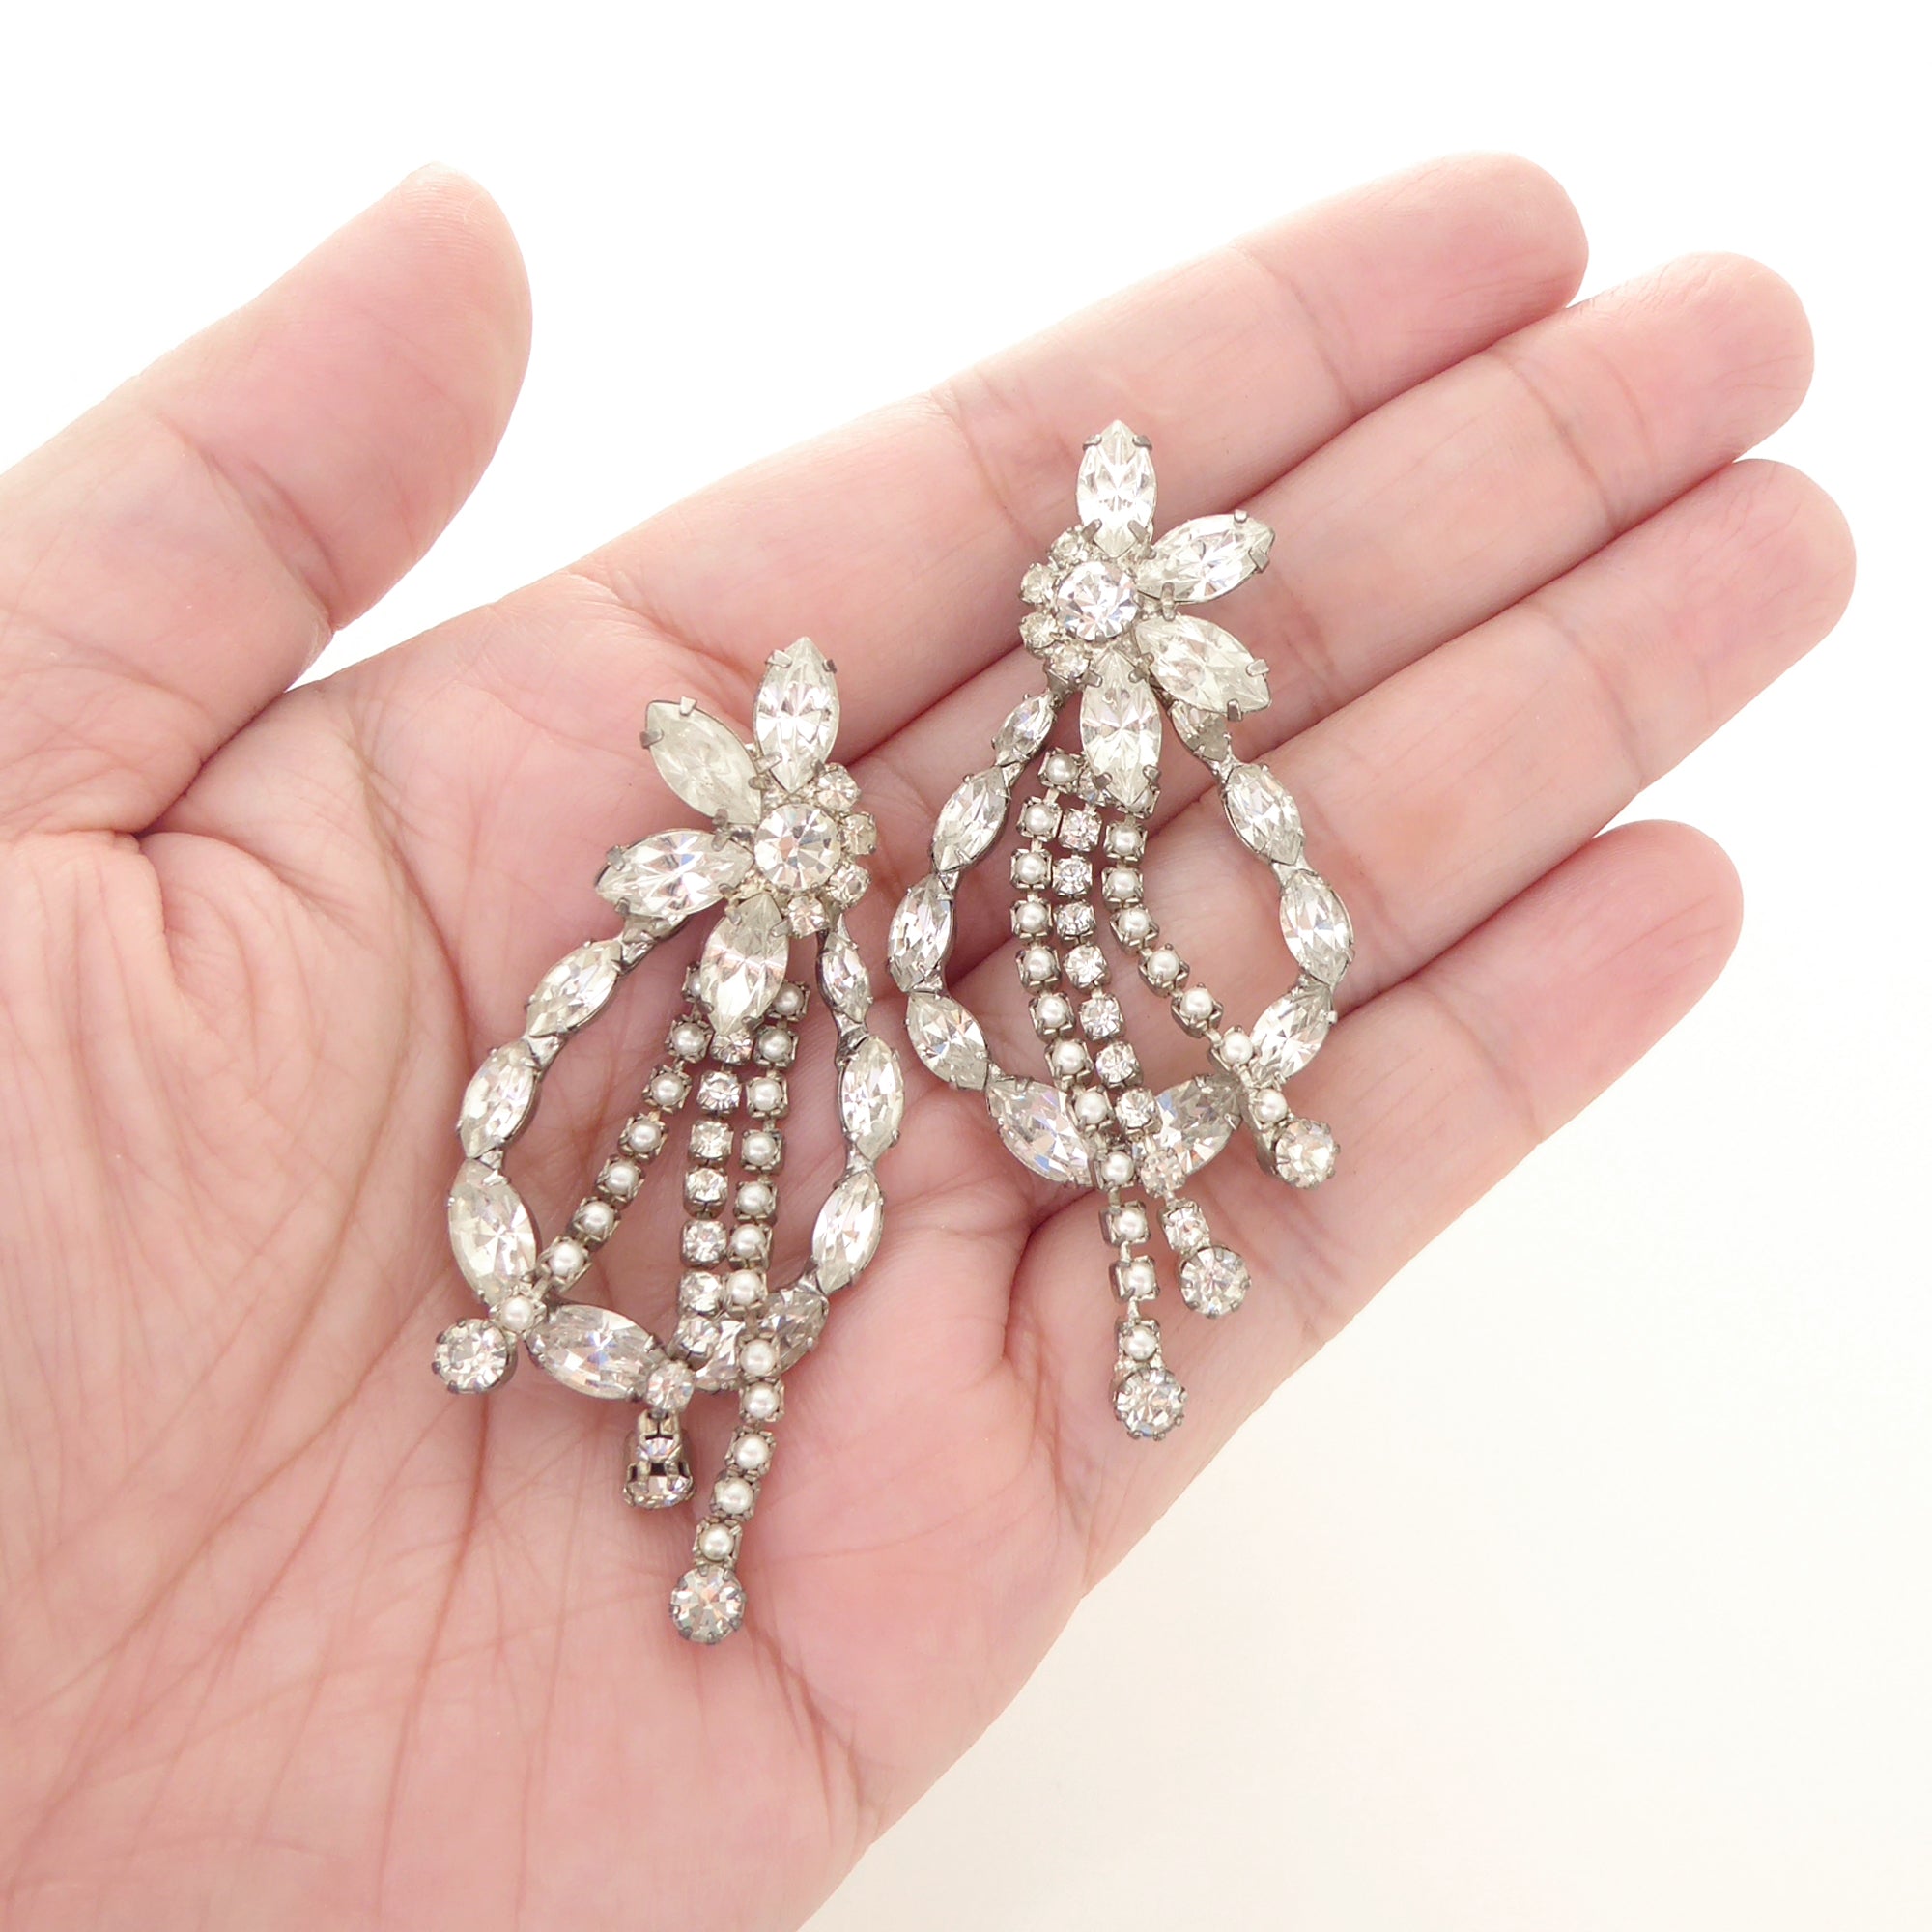 Silver rhinestone flower and teardrop earrings by Jenny Dayco 6